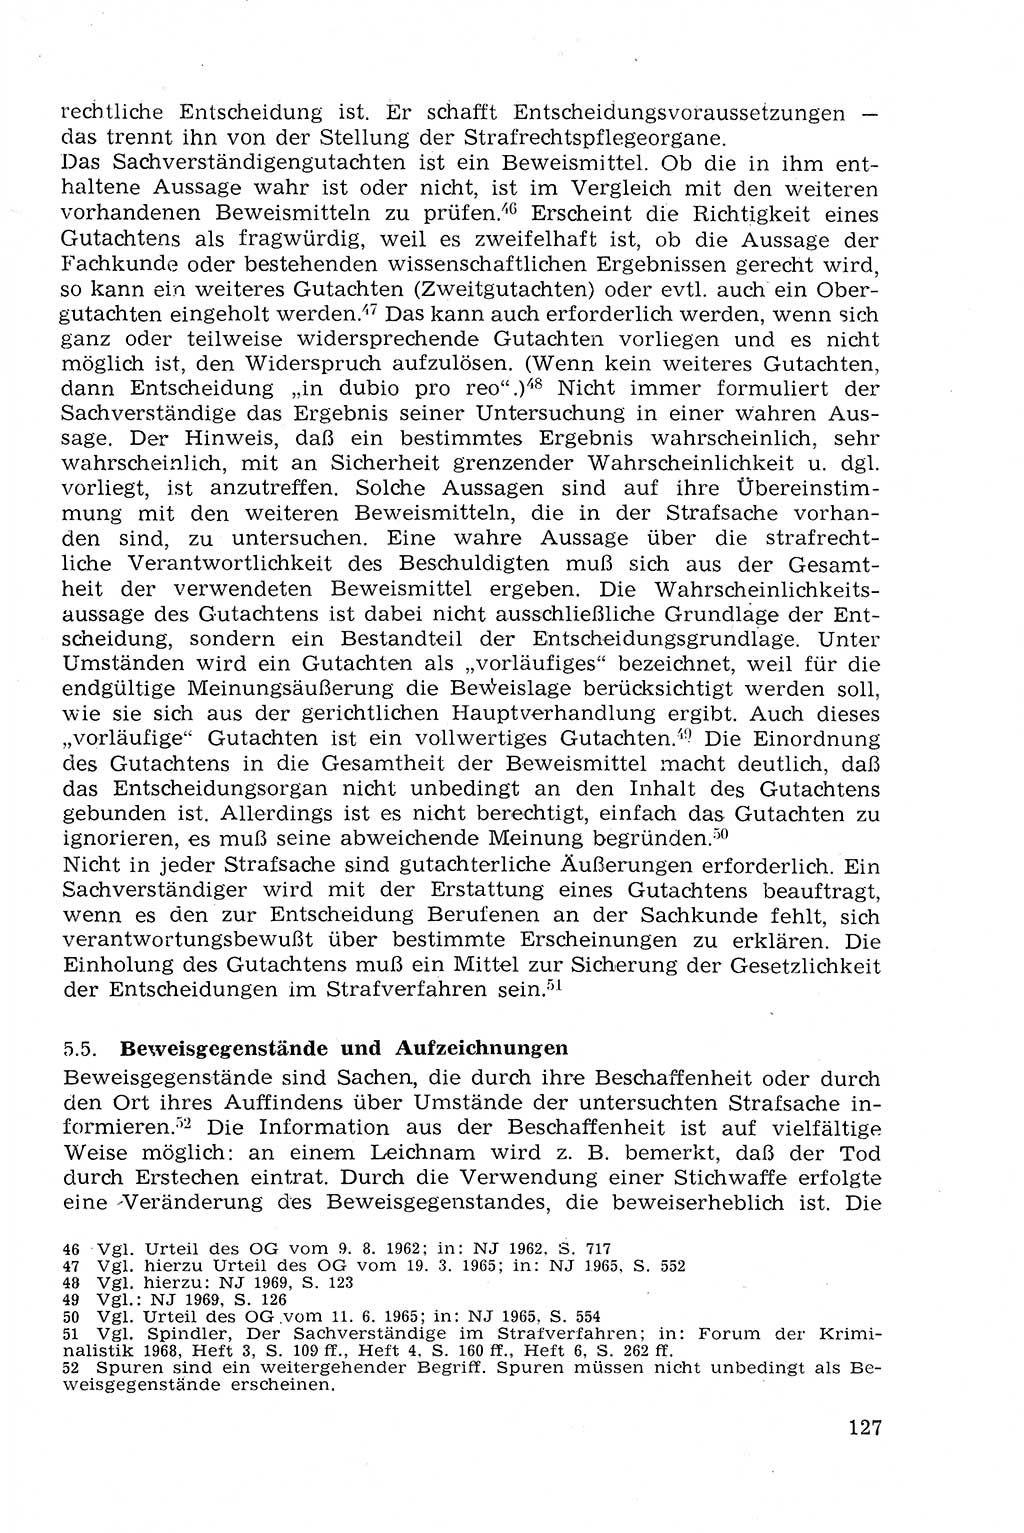 Strafprozeßrecht der DDR (Deutsche Demokratische Republik), Lehrmaterial 1969, Seite 127 (Strafprozeßr. DDR Lehrmat. 1969, S. 127)